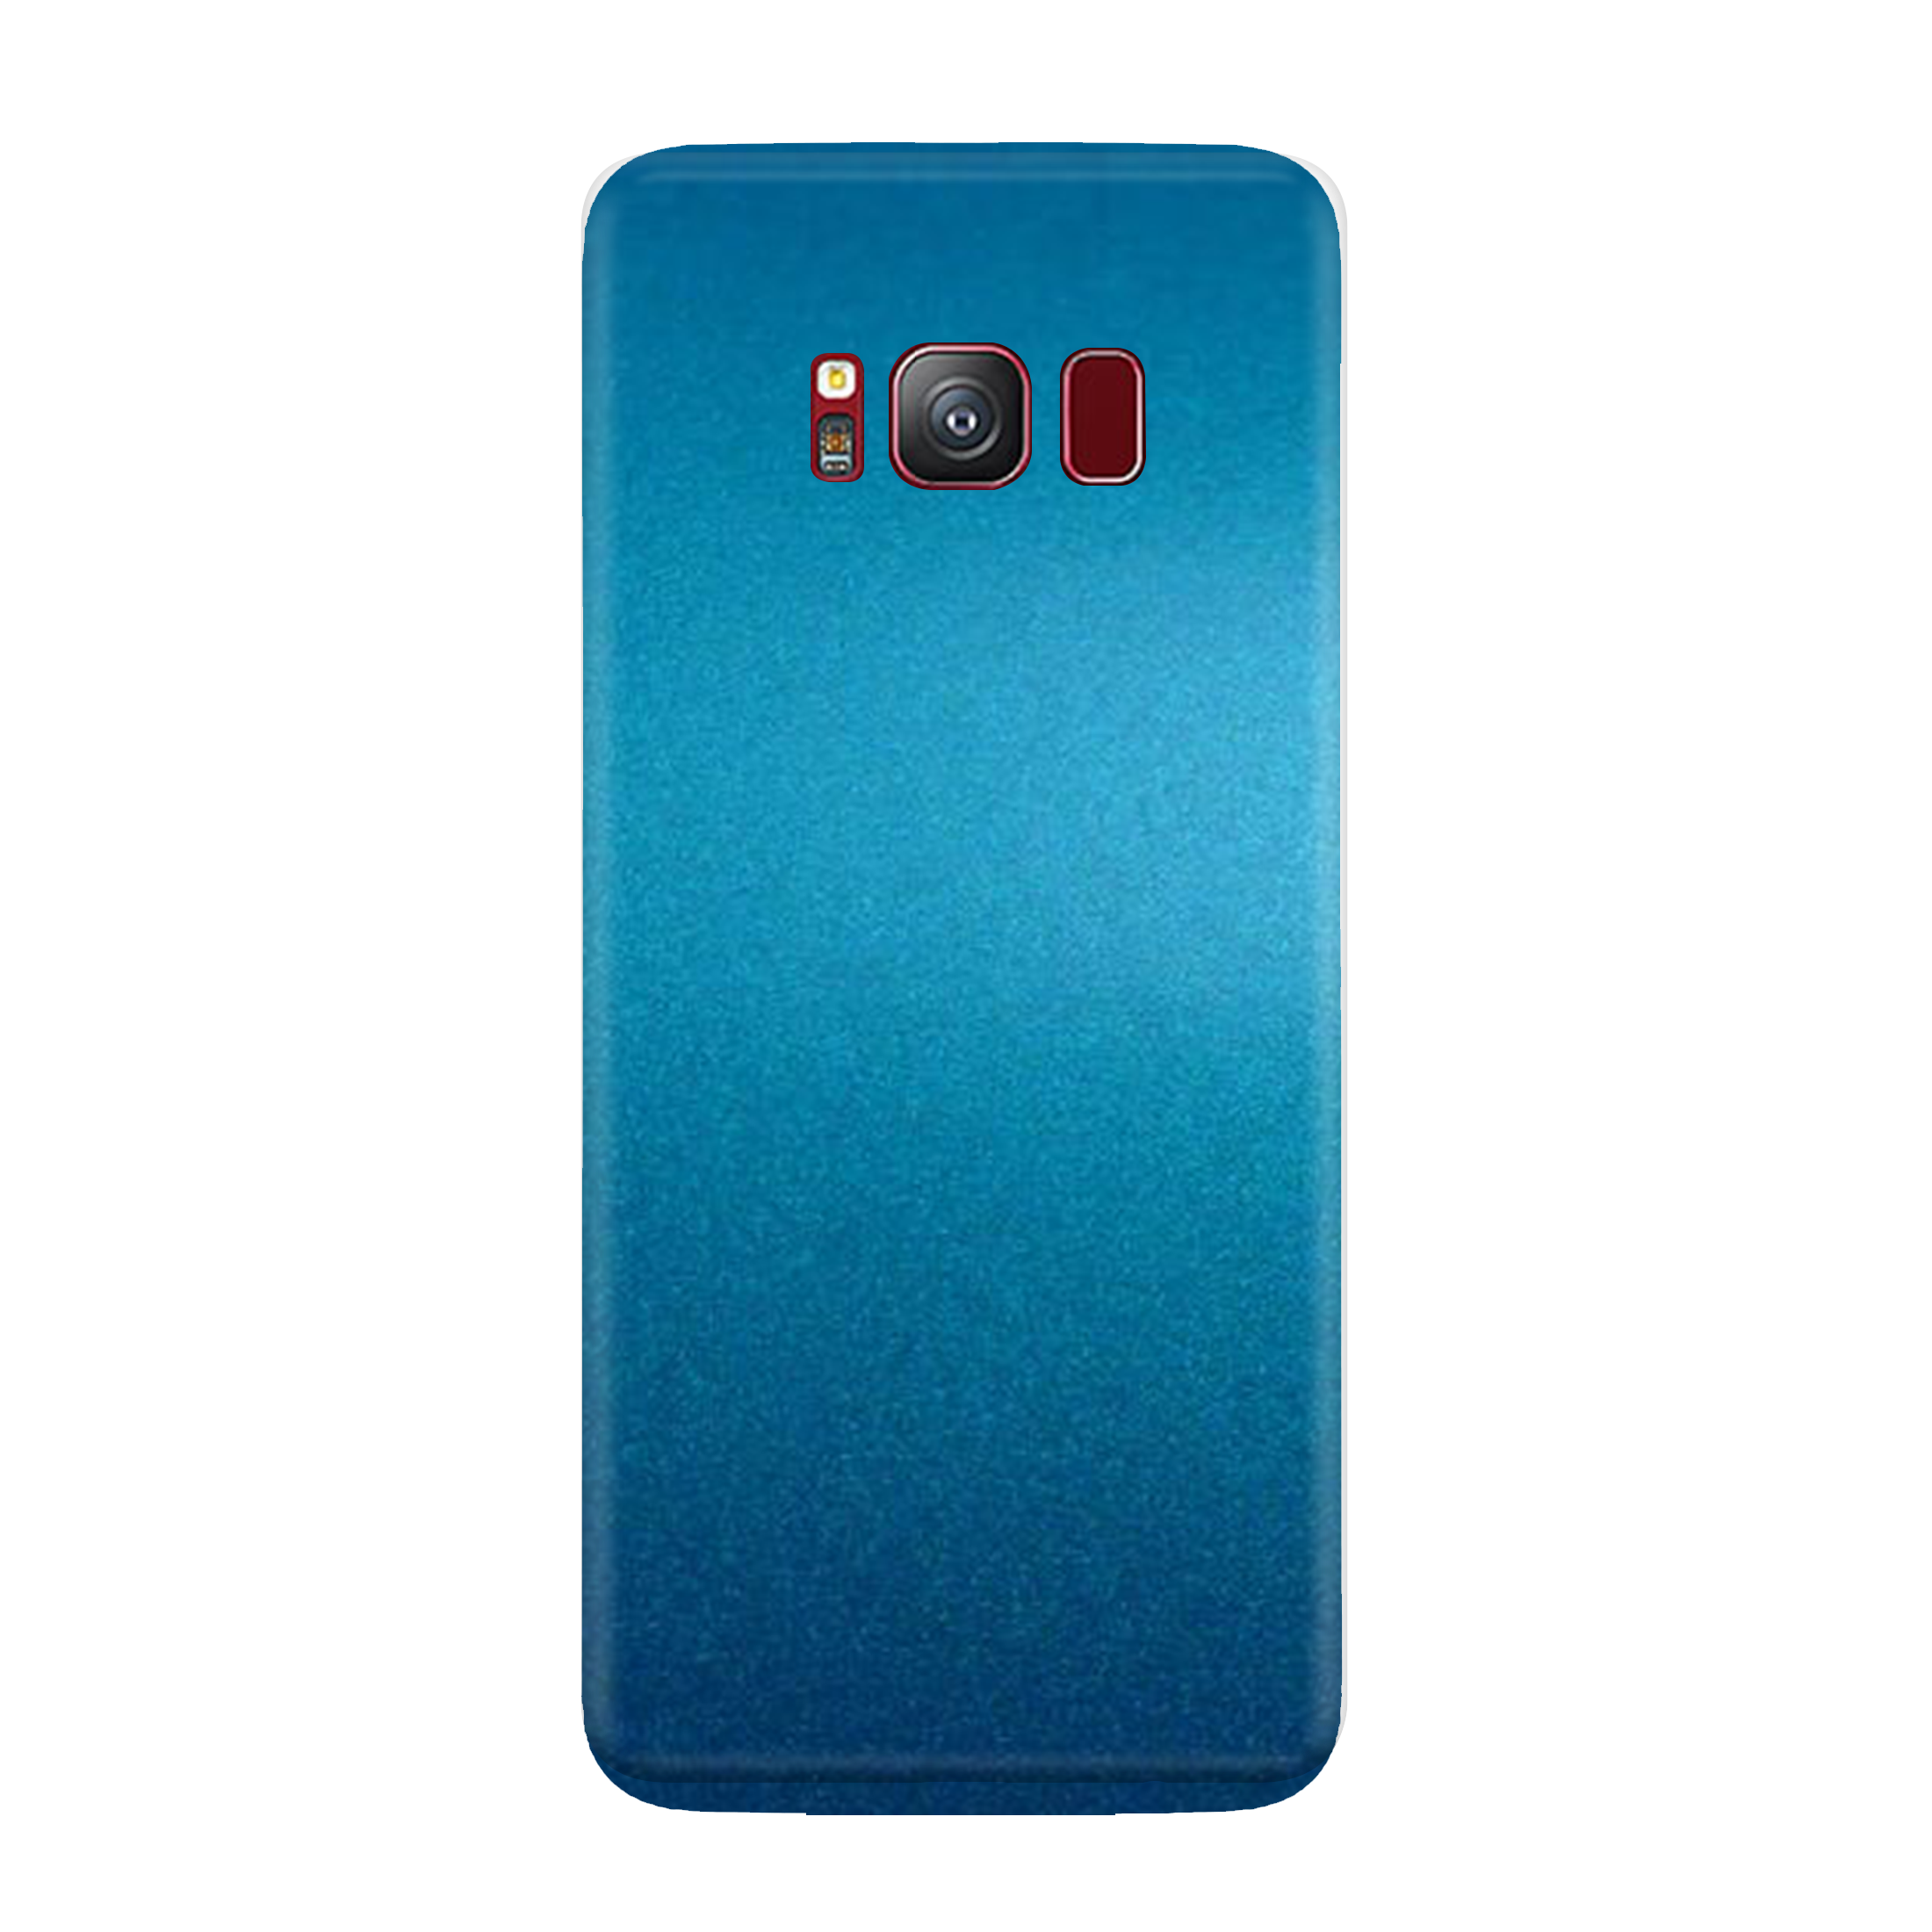 Ocean Blue Skin for Samsung S8